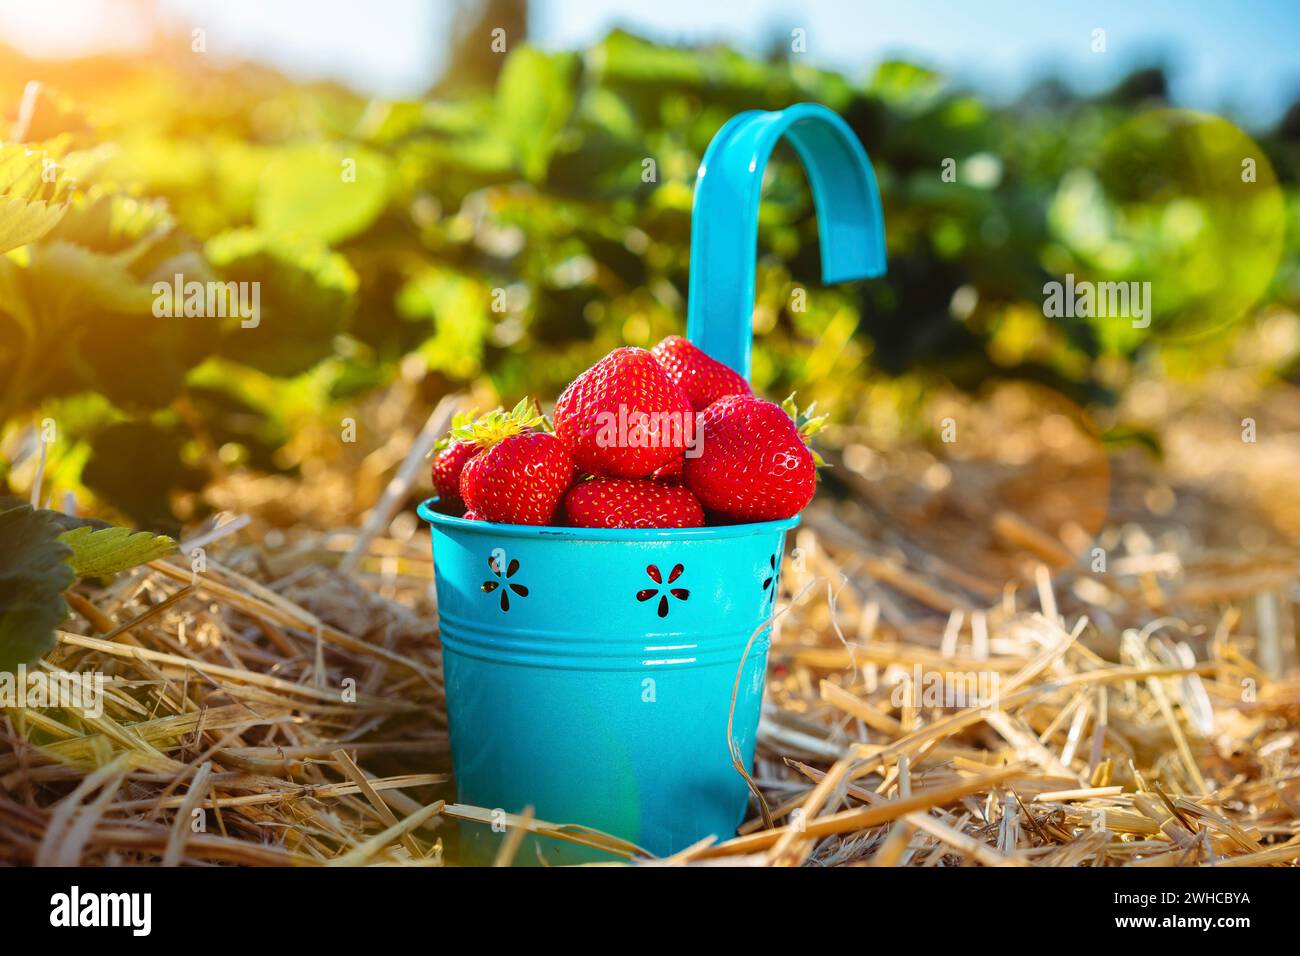 Secchio blu con fragole fresche in un campo. La luce solare del giorno irradia e bagliore nell'inquadratura. Foto Stock